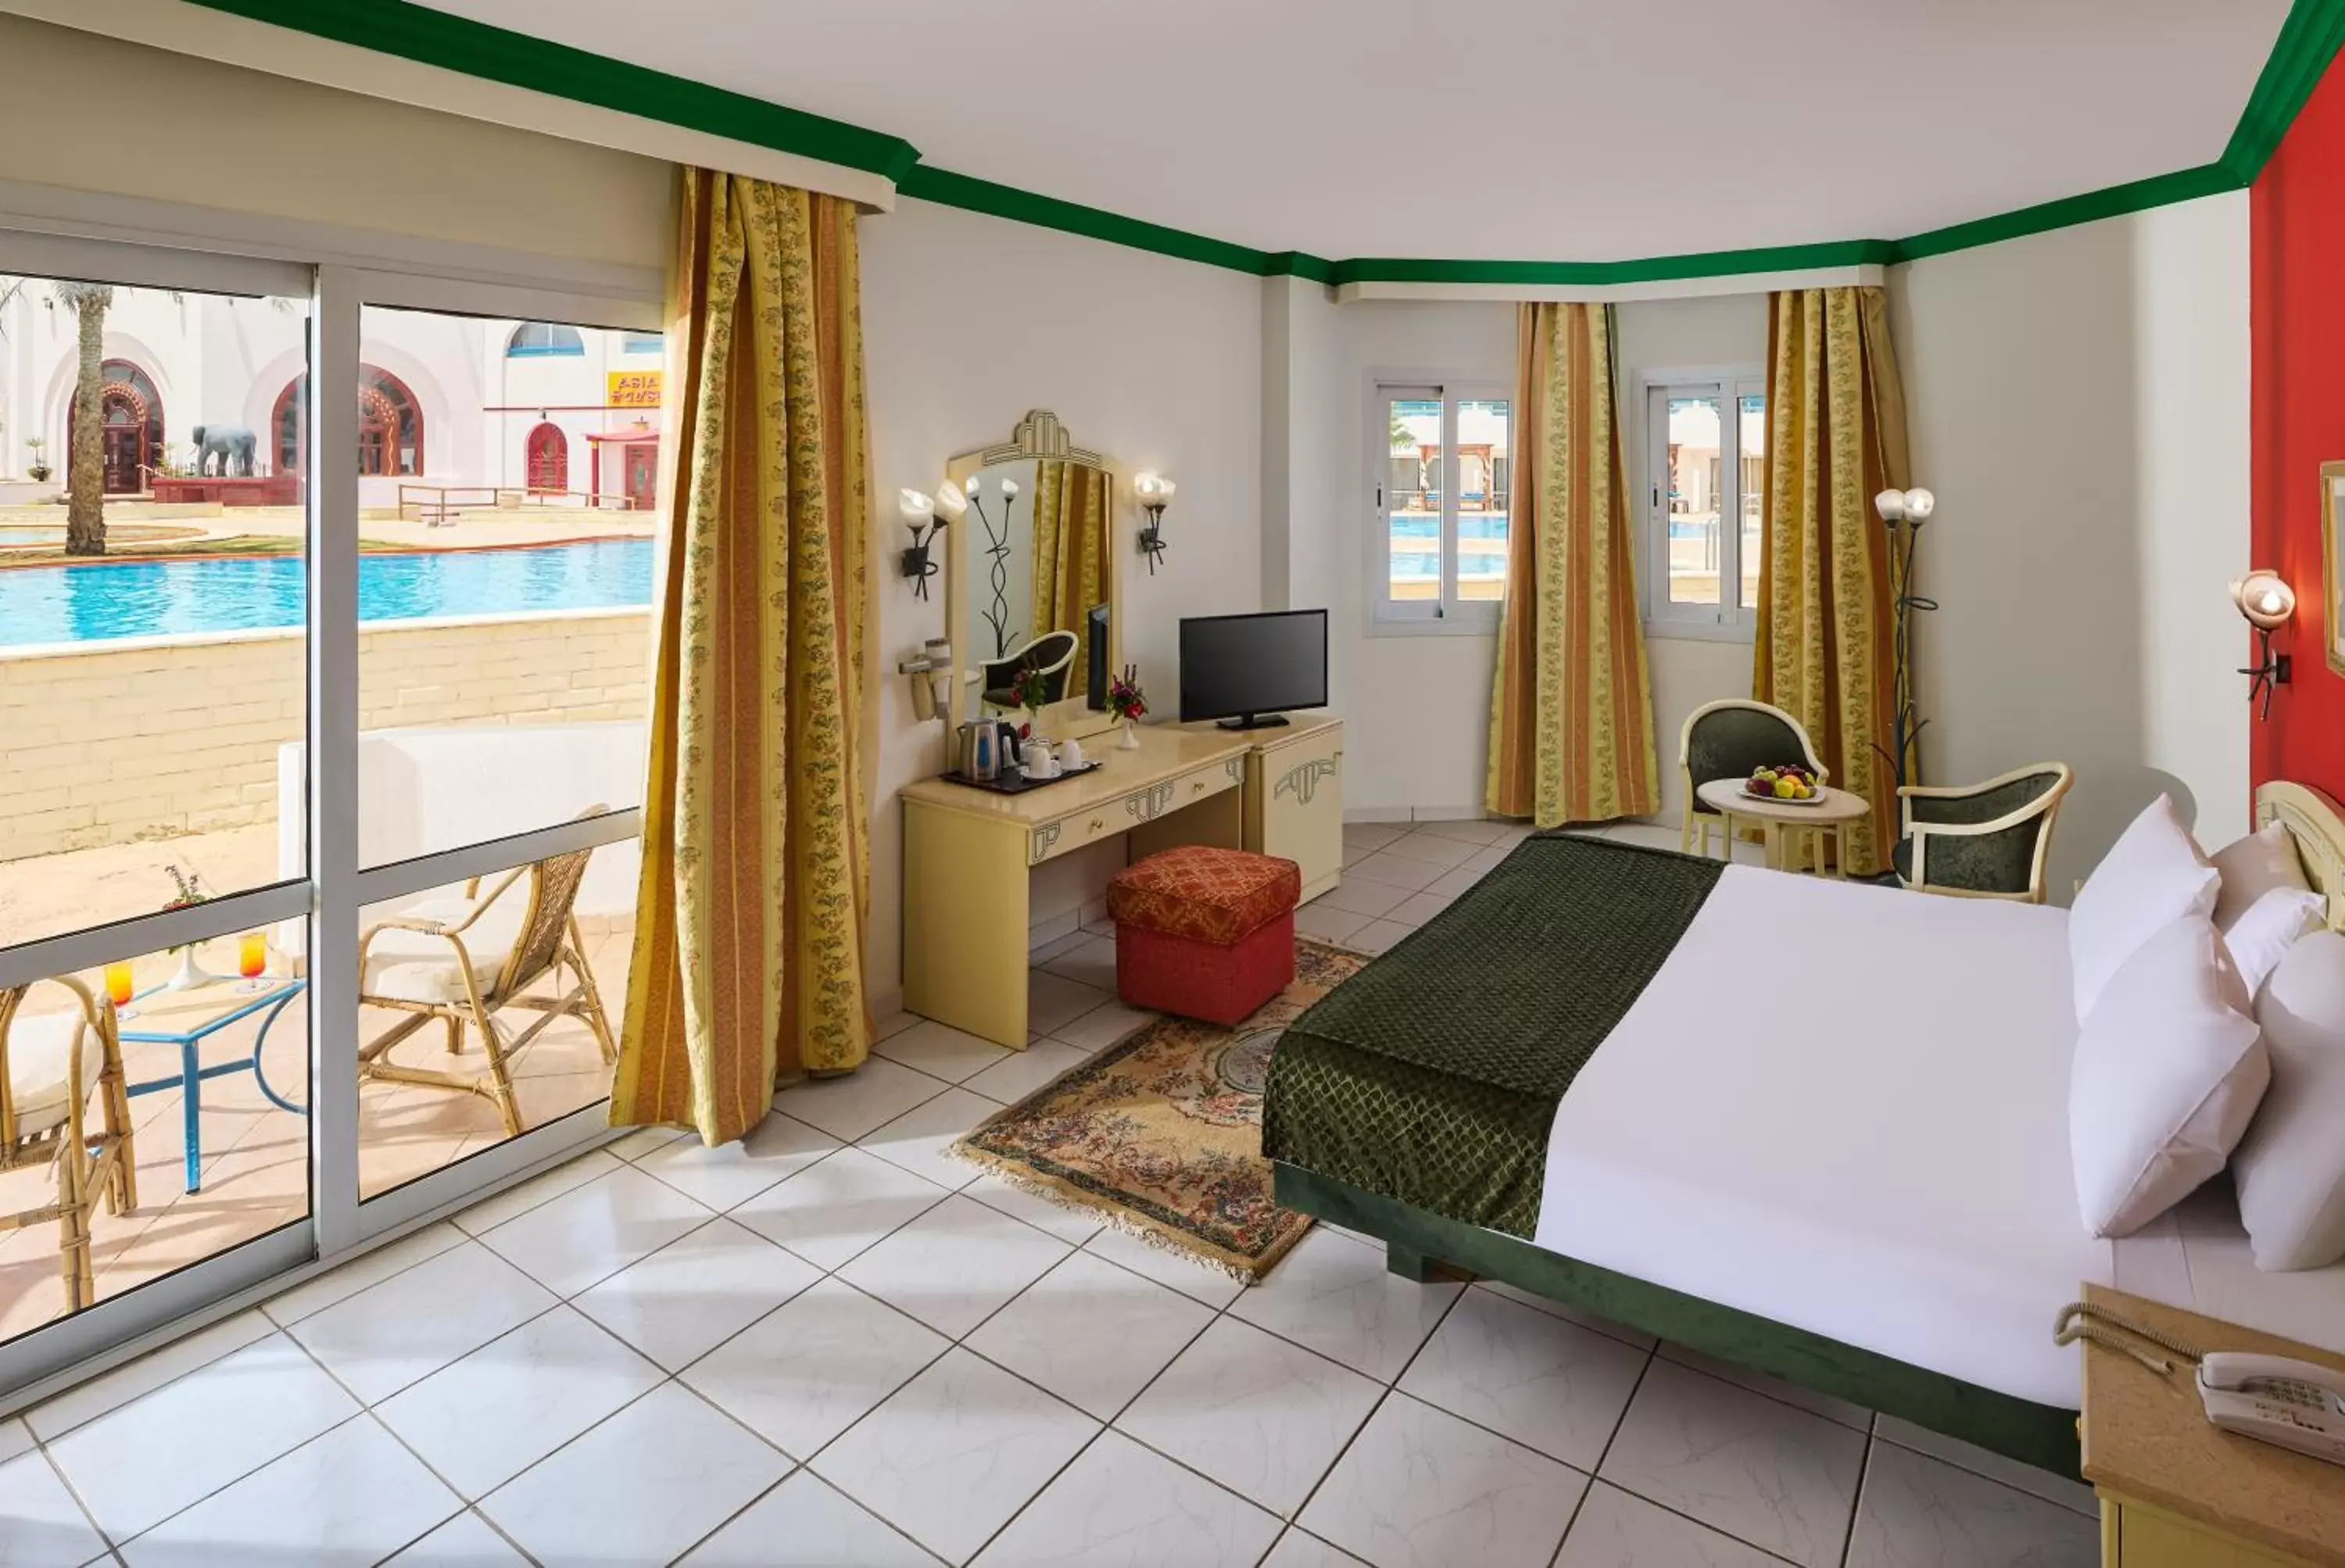 Bedroom in Dreams Vacation Resort - Sharm El Sheikh